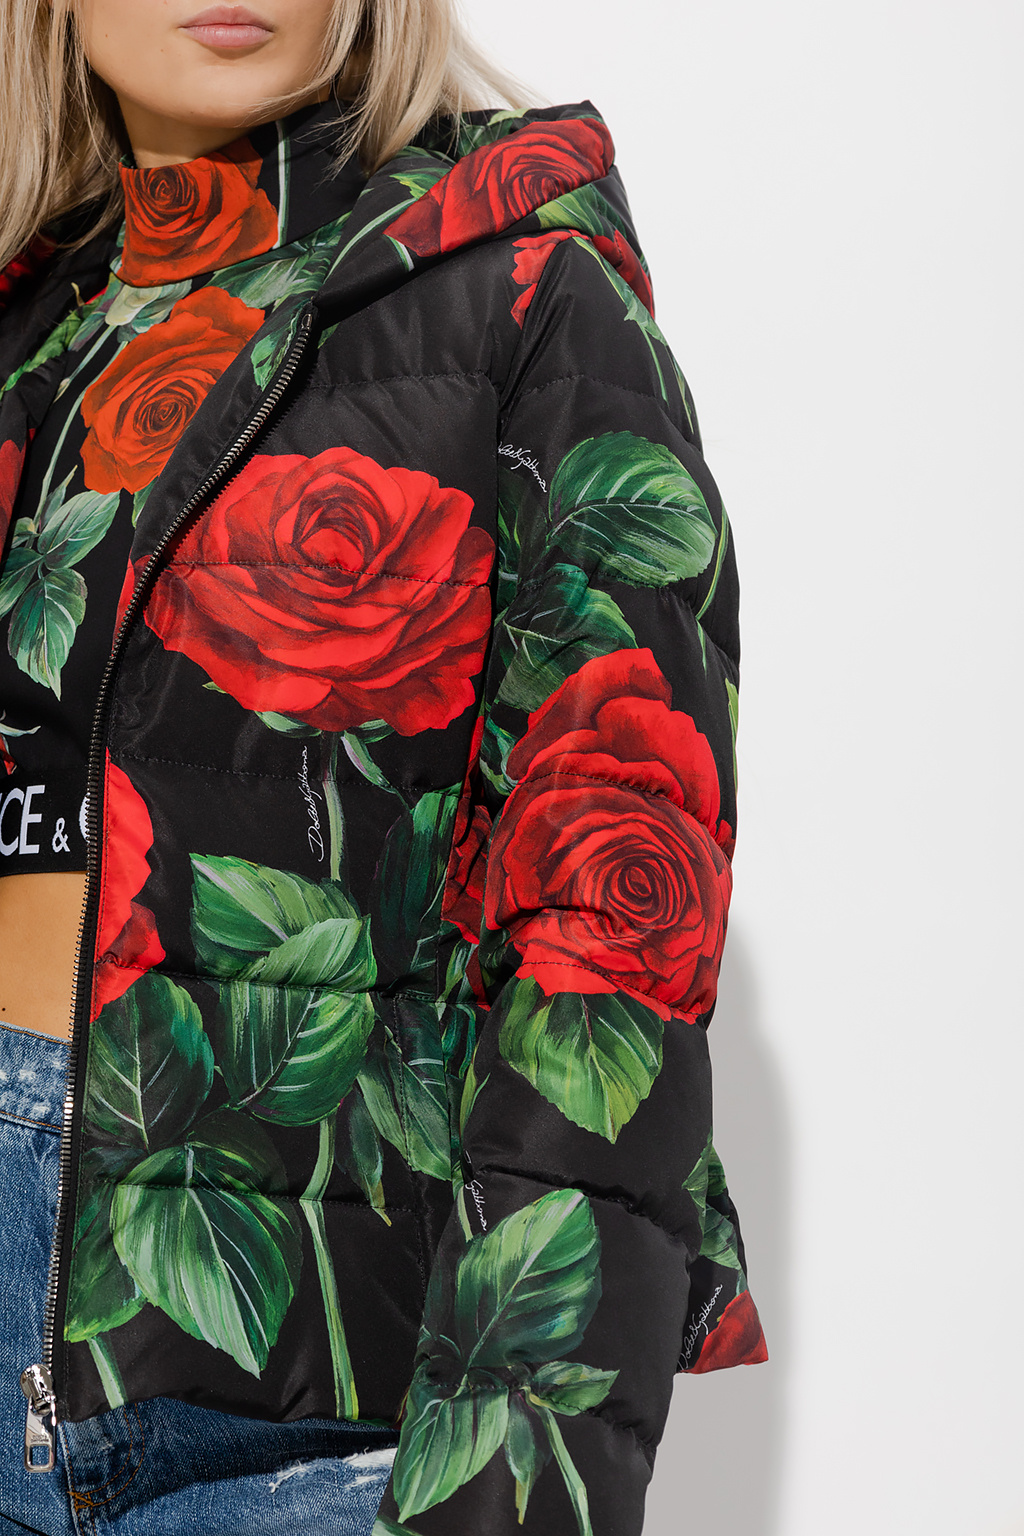 Dolce & Gabbana Floral jacket